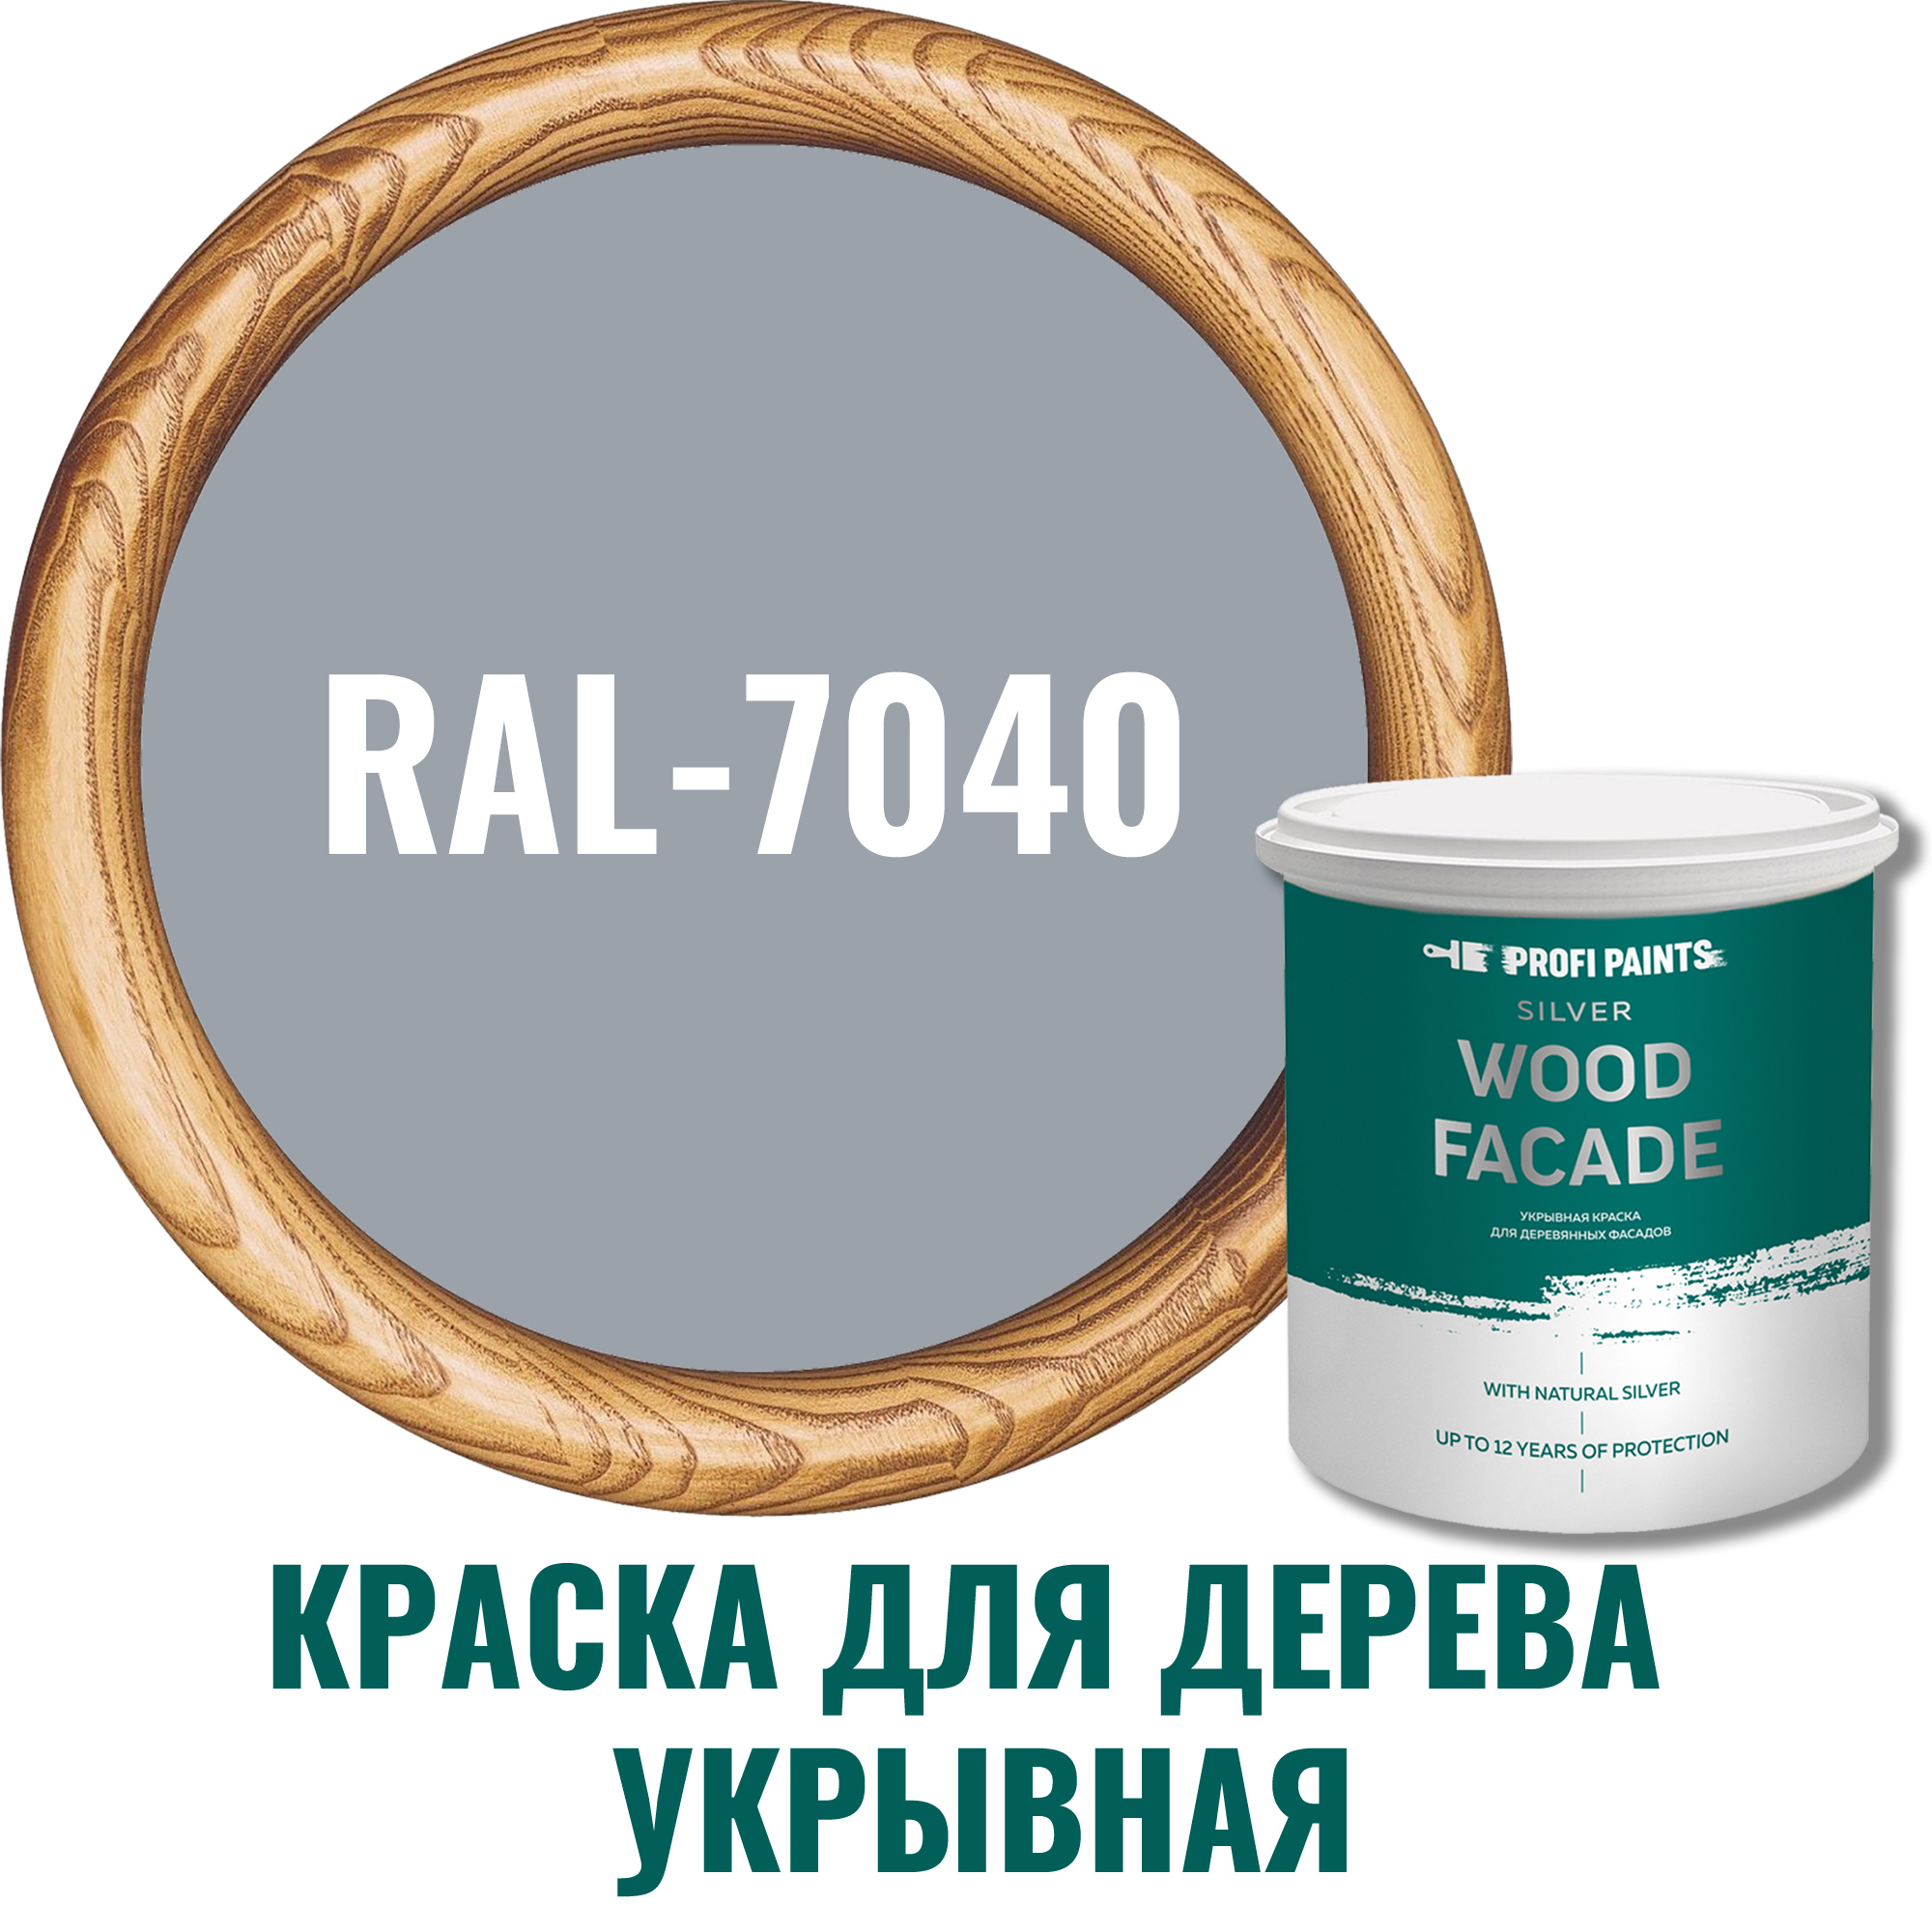 91106614 Краска для дерева 11254_D SILVER WOOD FASADE цвет RAL-7040 серый 9 л STLM-0487607 PROFIPAINTS